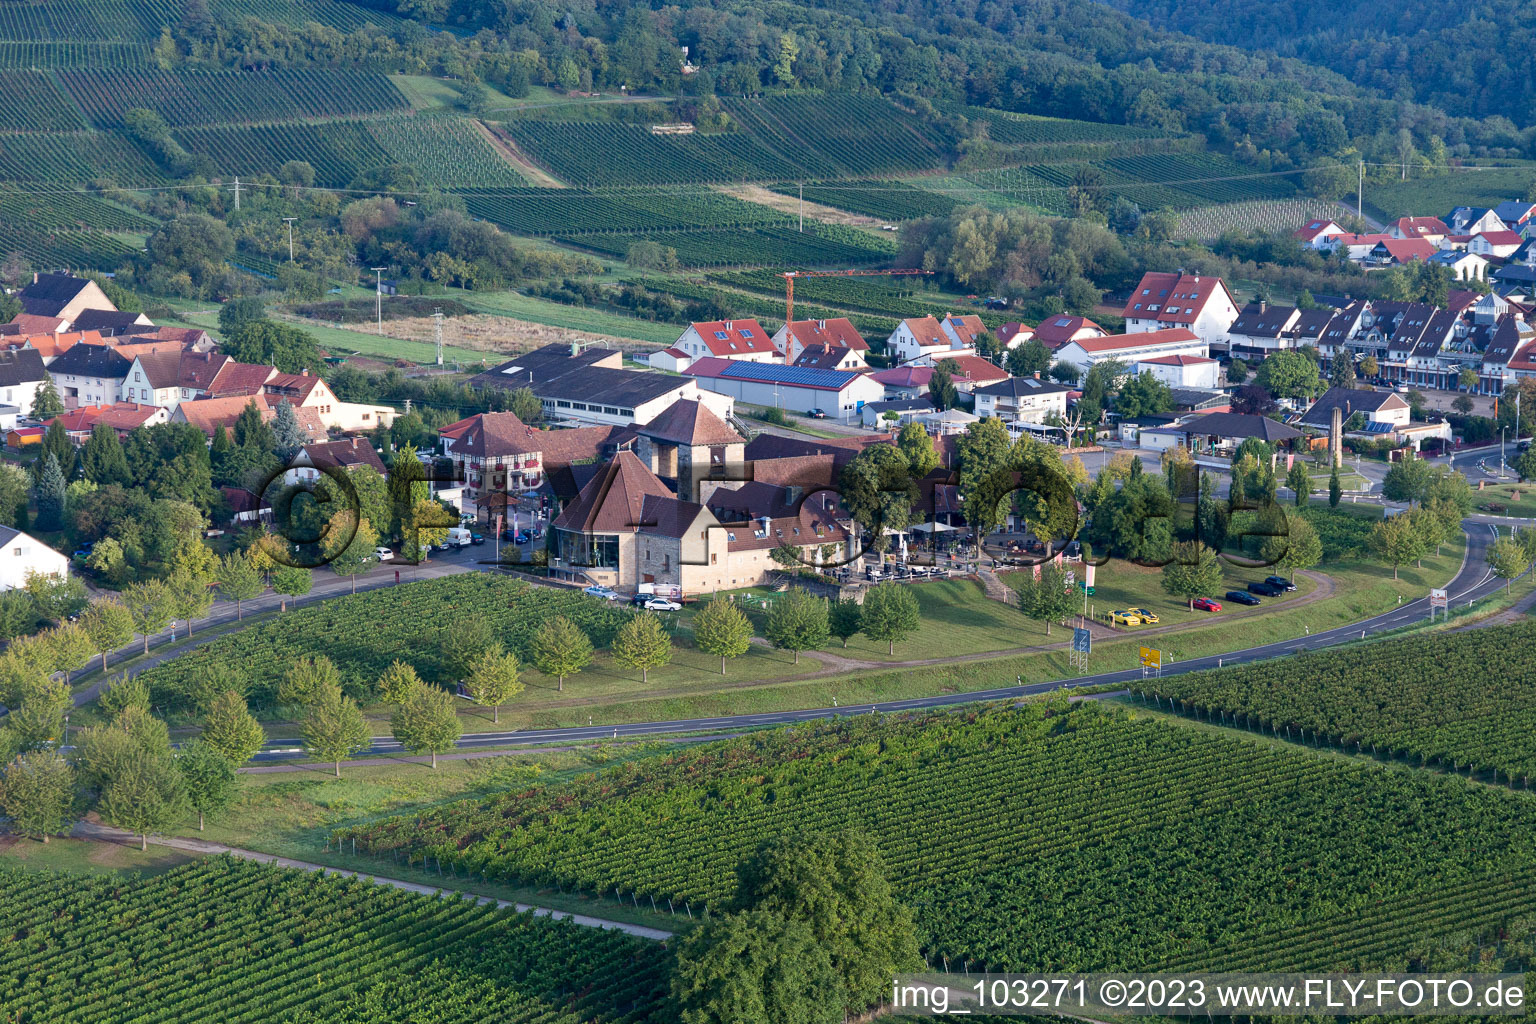 Wine gate in the district Schweigen in Schweigen-Rechtenbach in the state Rhineland-Palatinate, Germany